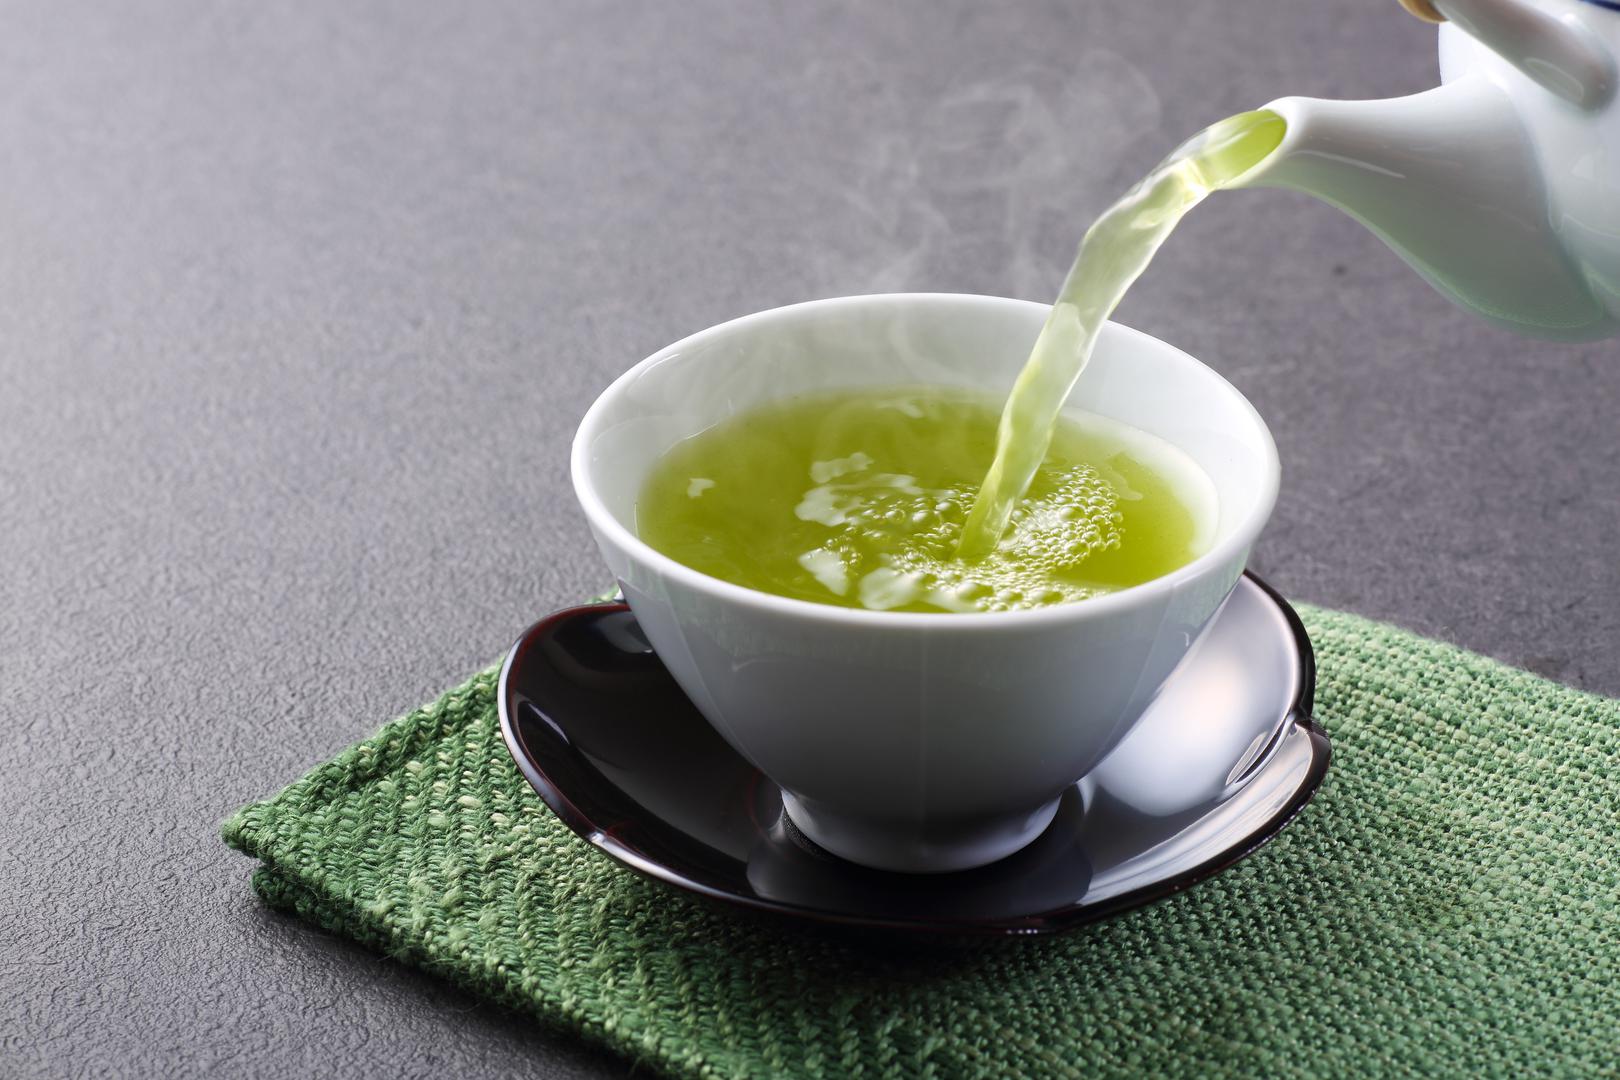 Zeleni čaj: Istraživanja sugeriraju da pijenje zelenog čaja može pomoći u zaštiti kognitivnih funkcija, spriječiti određene vrste raka, pomoći u kontroli šećera u krvi i još mnogo toga, zahvaljujući velikoj količini antioksidansa. On također može pomoći u sagorijevanju sala na trbuhu i ubrzati mršavljenje. 'Zeleni čaj nadaleko je poznat po svojoj sposobnosti da pospješuje metabolizam i sagorijeva masnoće, posebno u području trbuha. To je zbog prisutnosti snažnog antioksidansa koji se zove EGCG', objašnjava Nanavati.